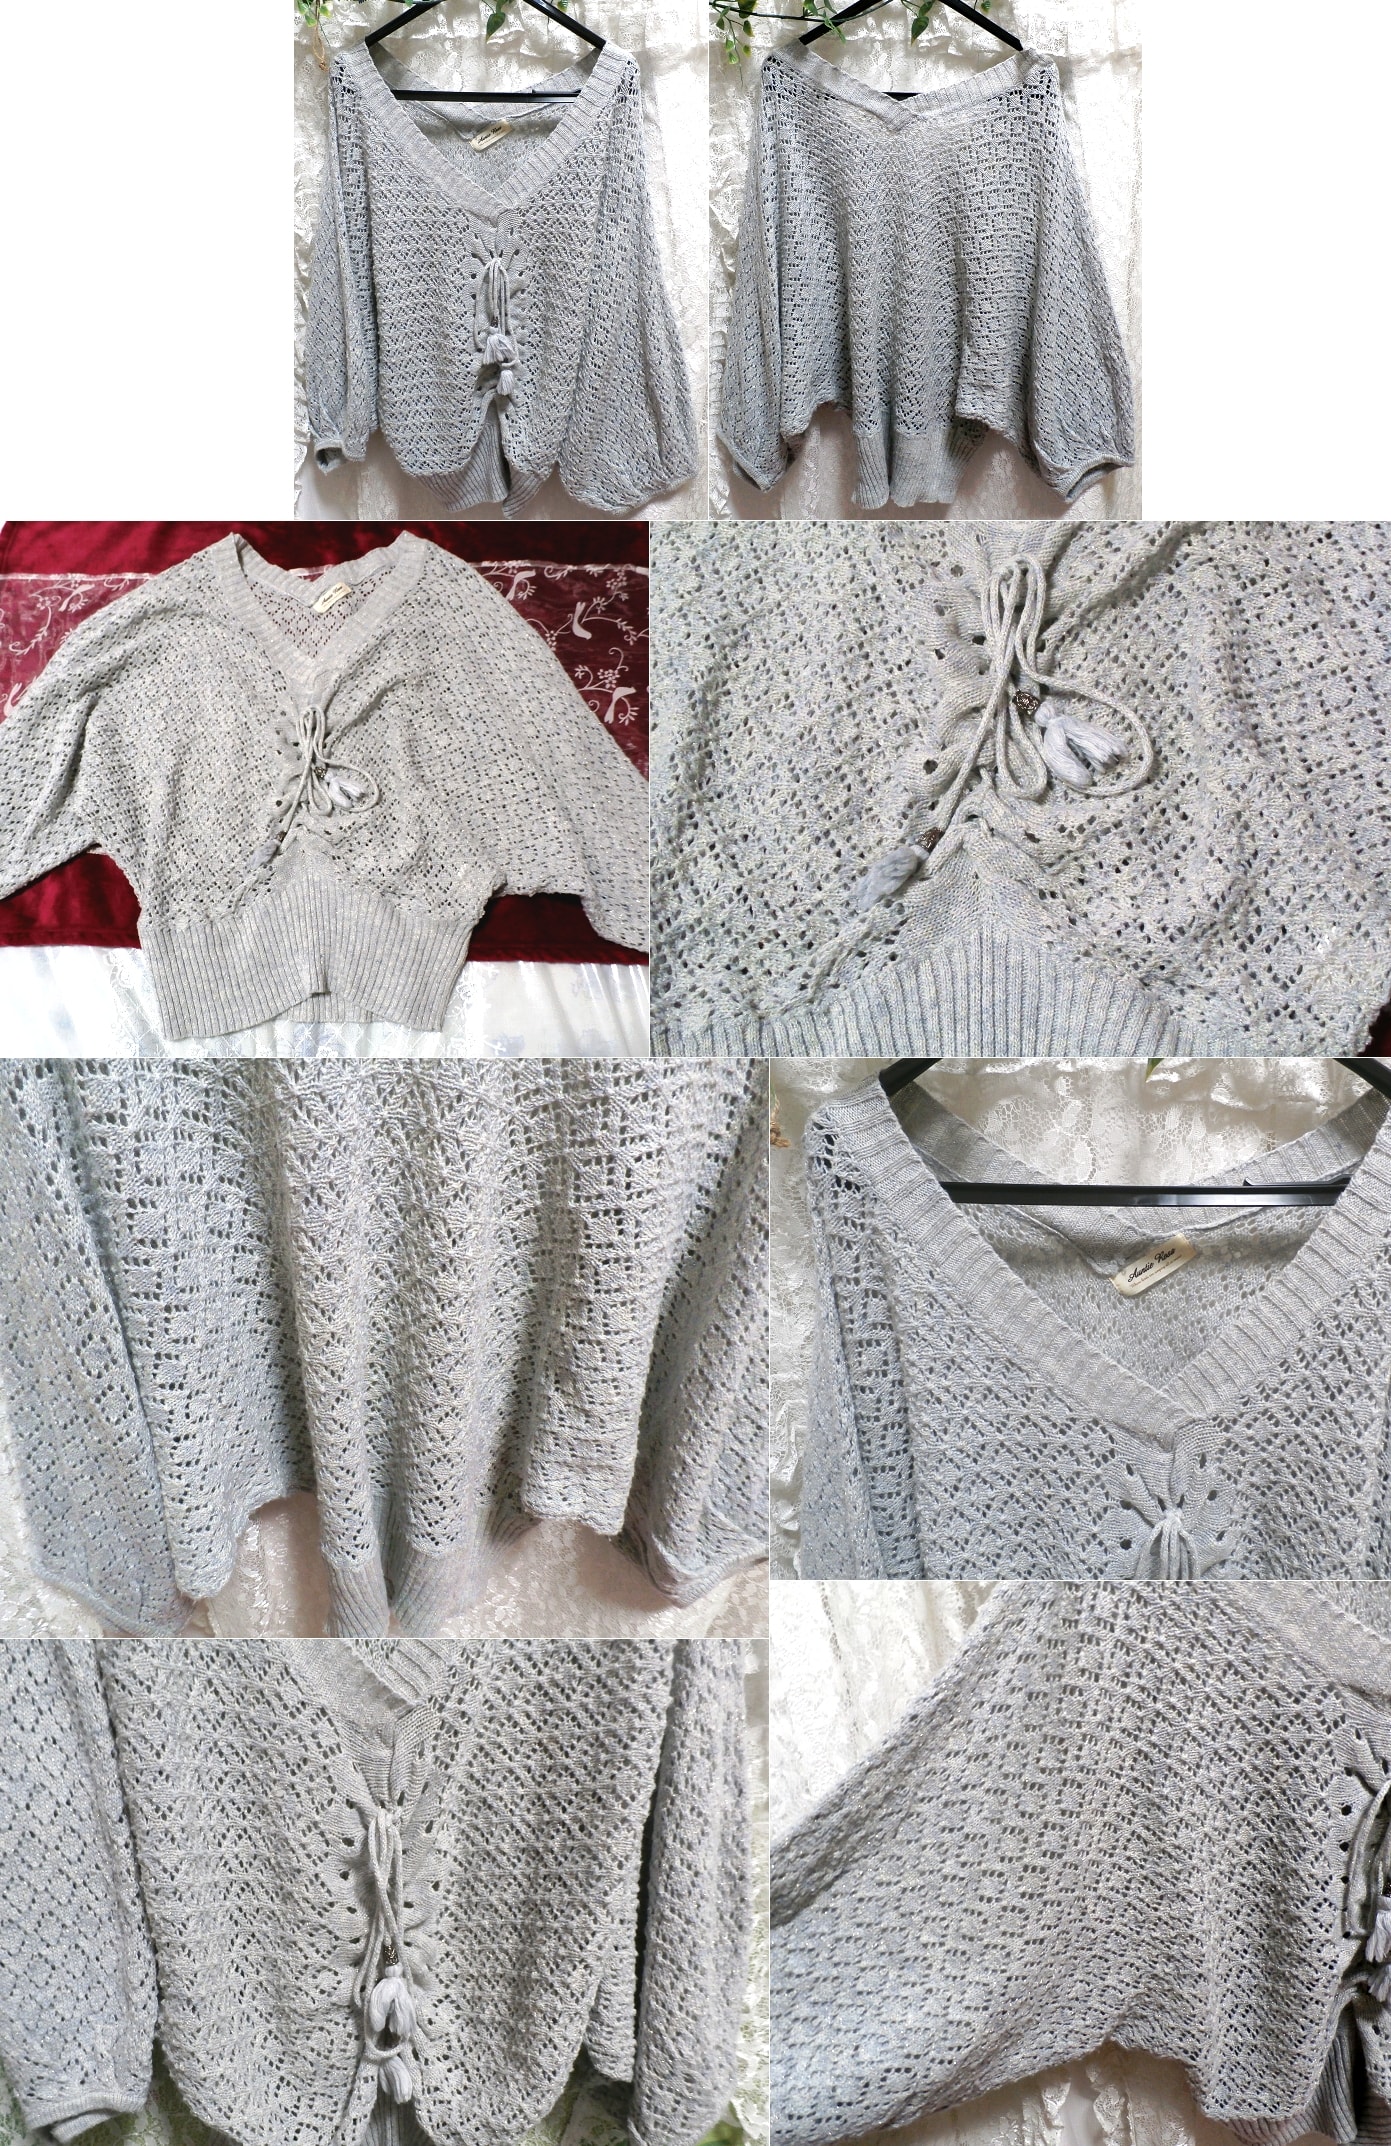 그레이 그레이 물색 판초형 레이스 스웨터 니트 겉옷, 숙녀 패션, 카디건, m 사이즈